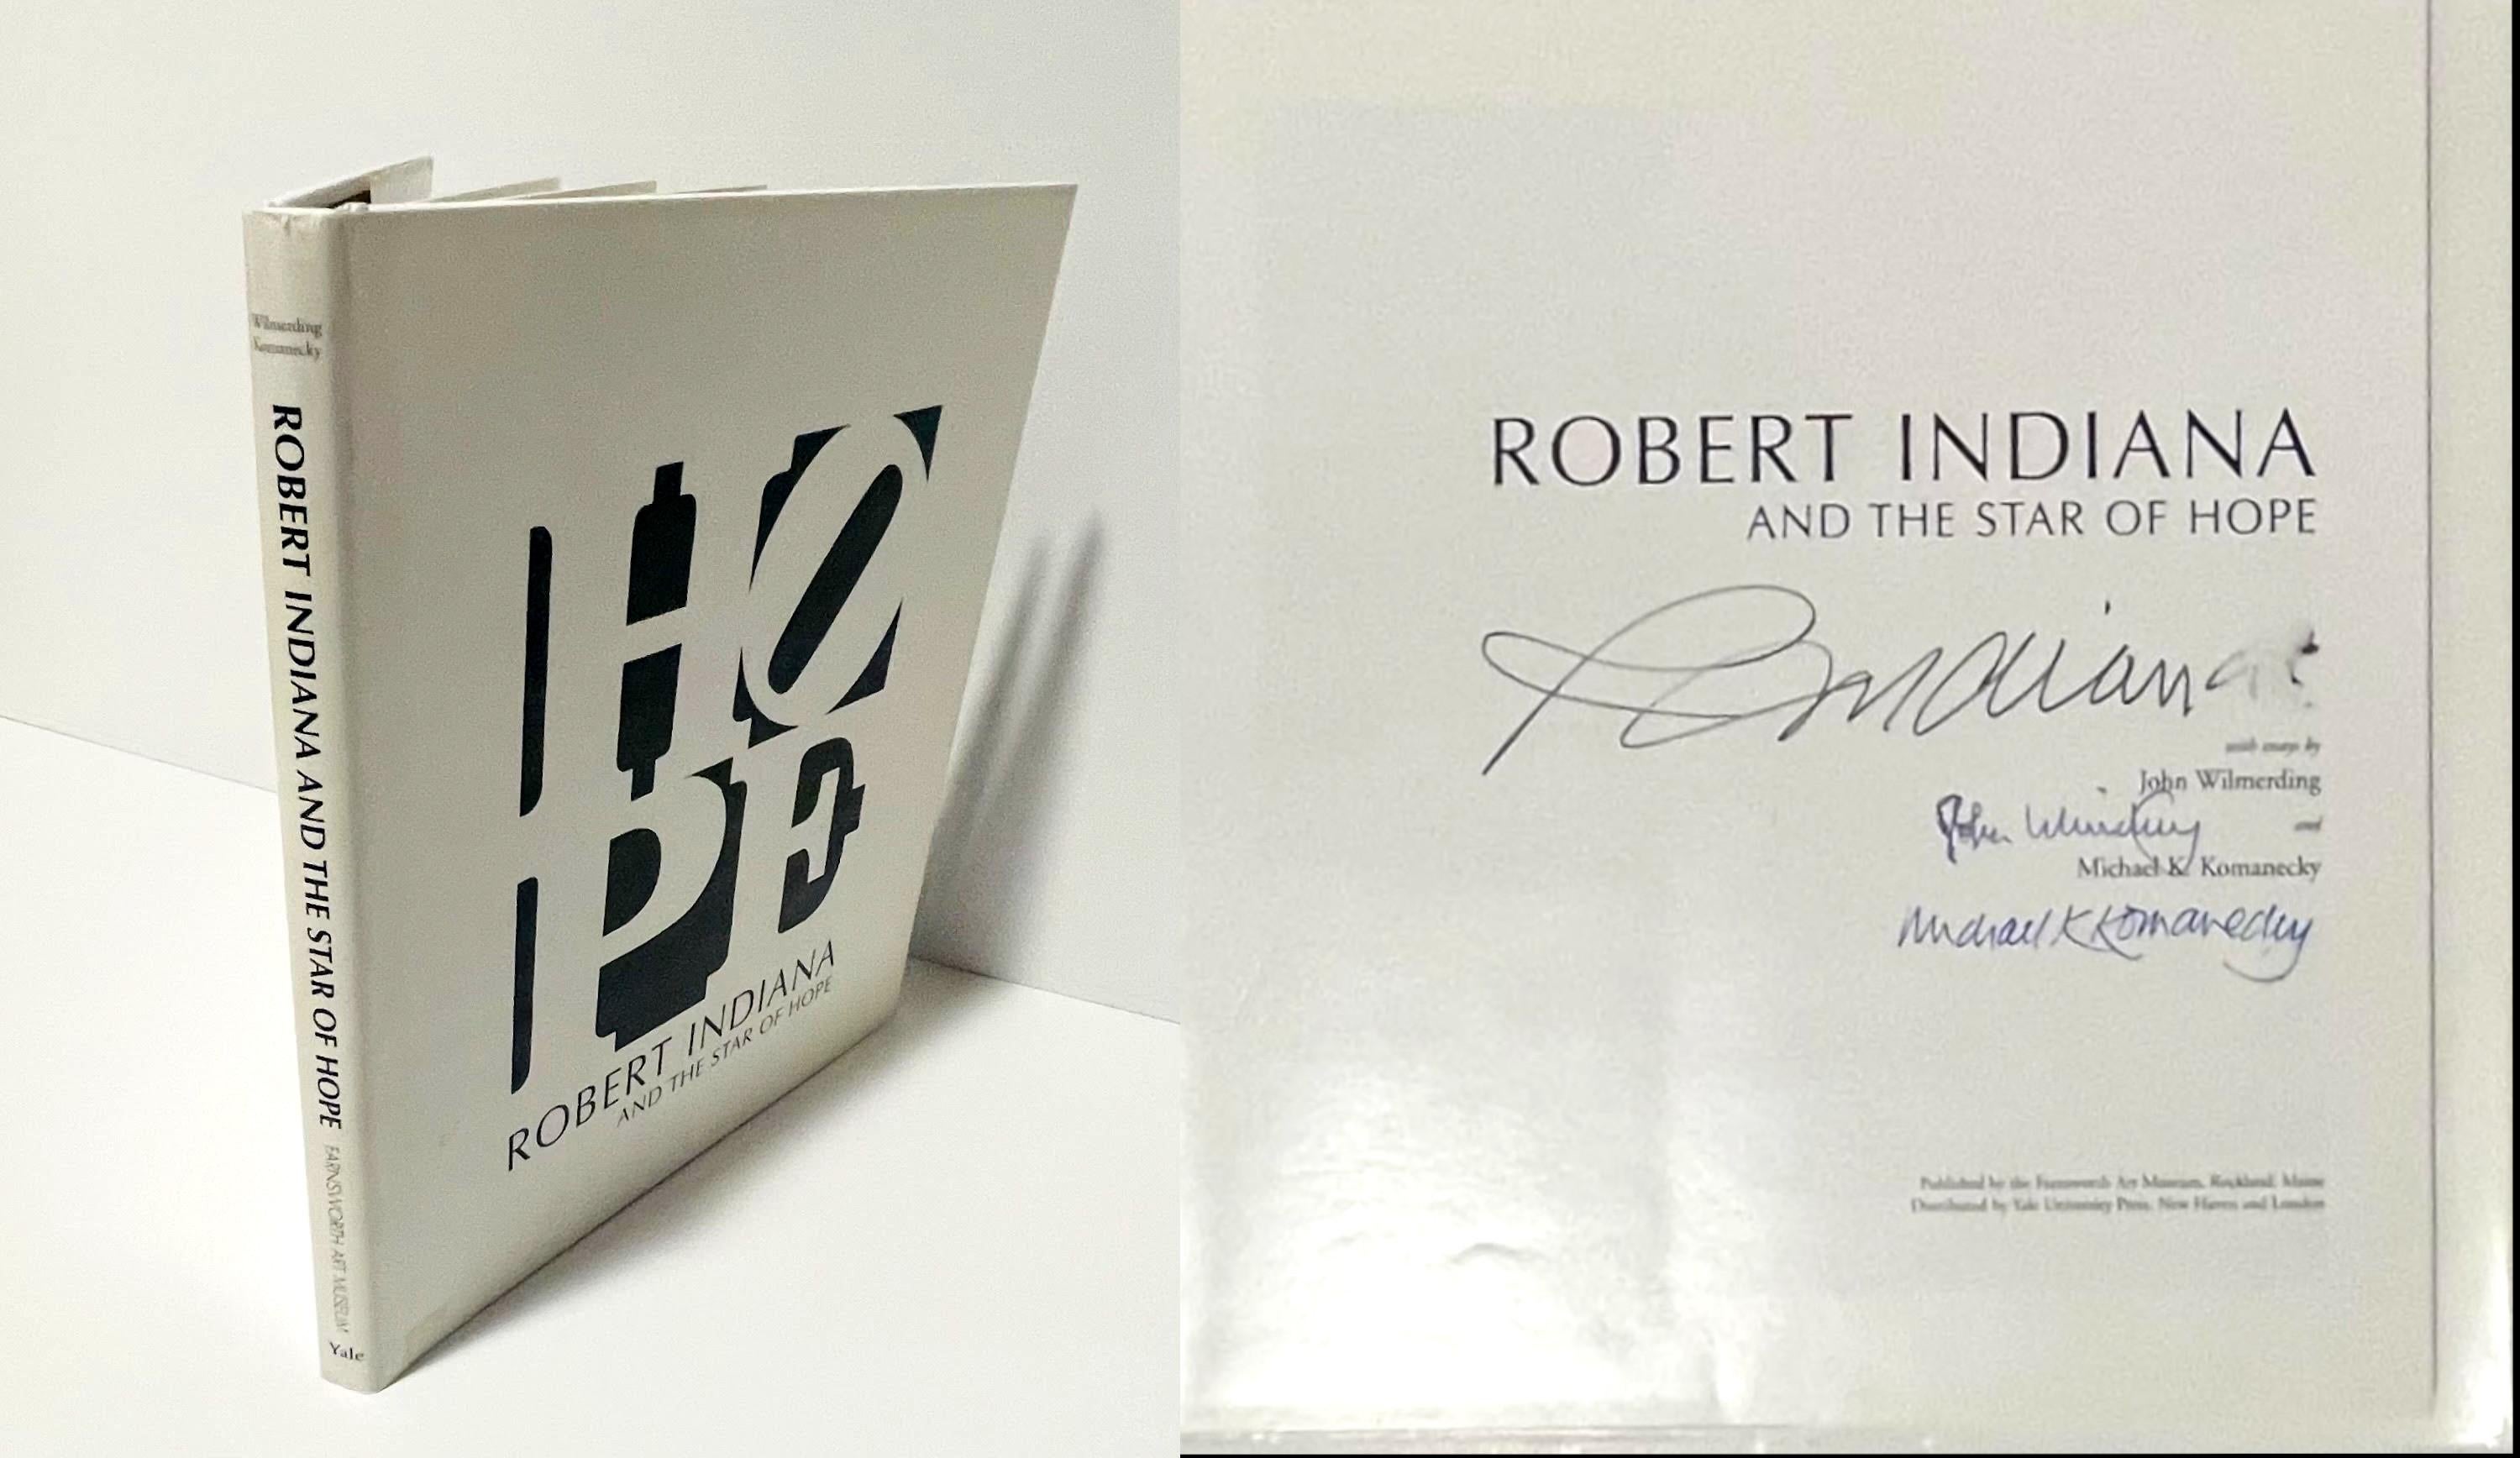 Robert Indiana
Monographie : Robert Indiana et l'étoile de l'espoir (signée à la main par l'artiste et les deux auteurs), 2009
Monographie reliée avec jaquette (signée à la main par Robert Indiana, ainsi que par les auteurs John Wilmerding et